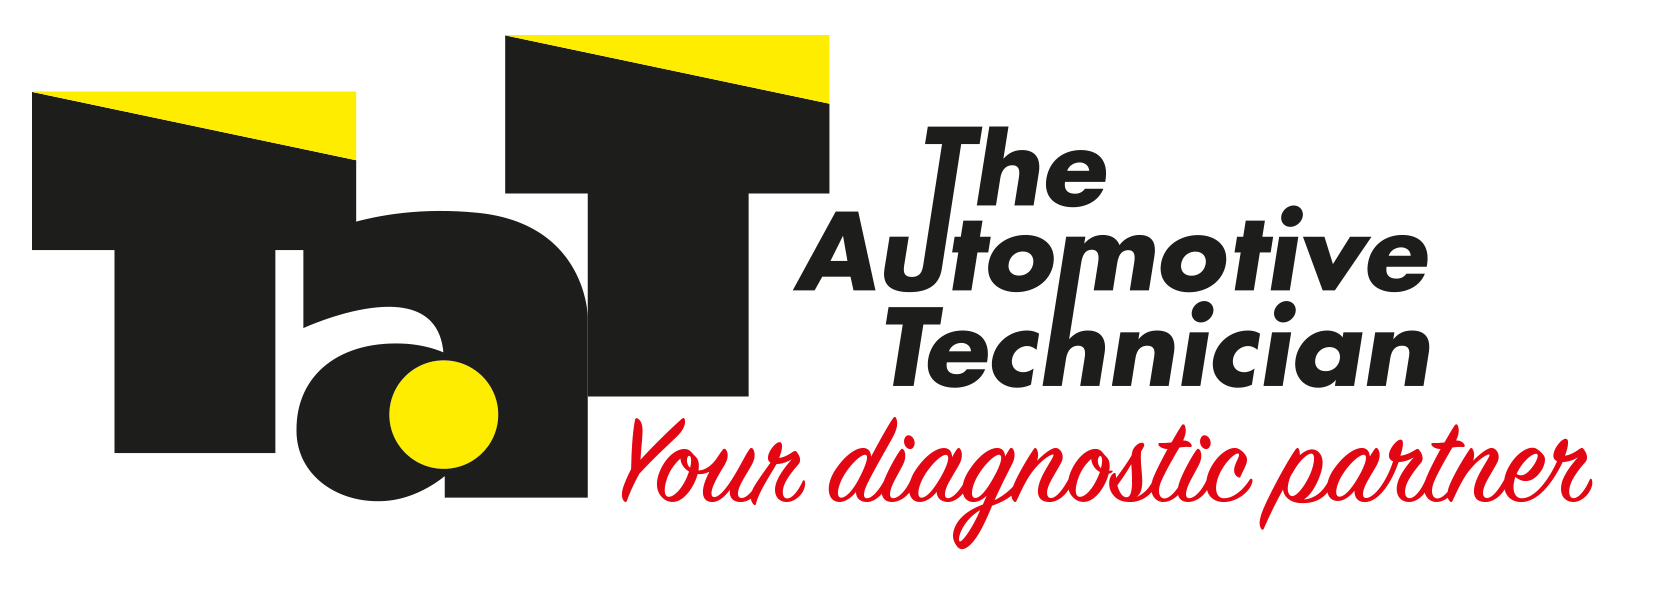 Automotive Technician Logo - The Automotive Technician